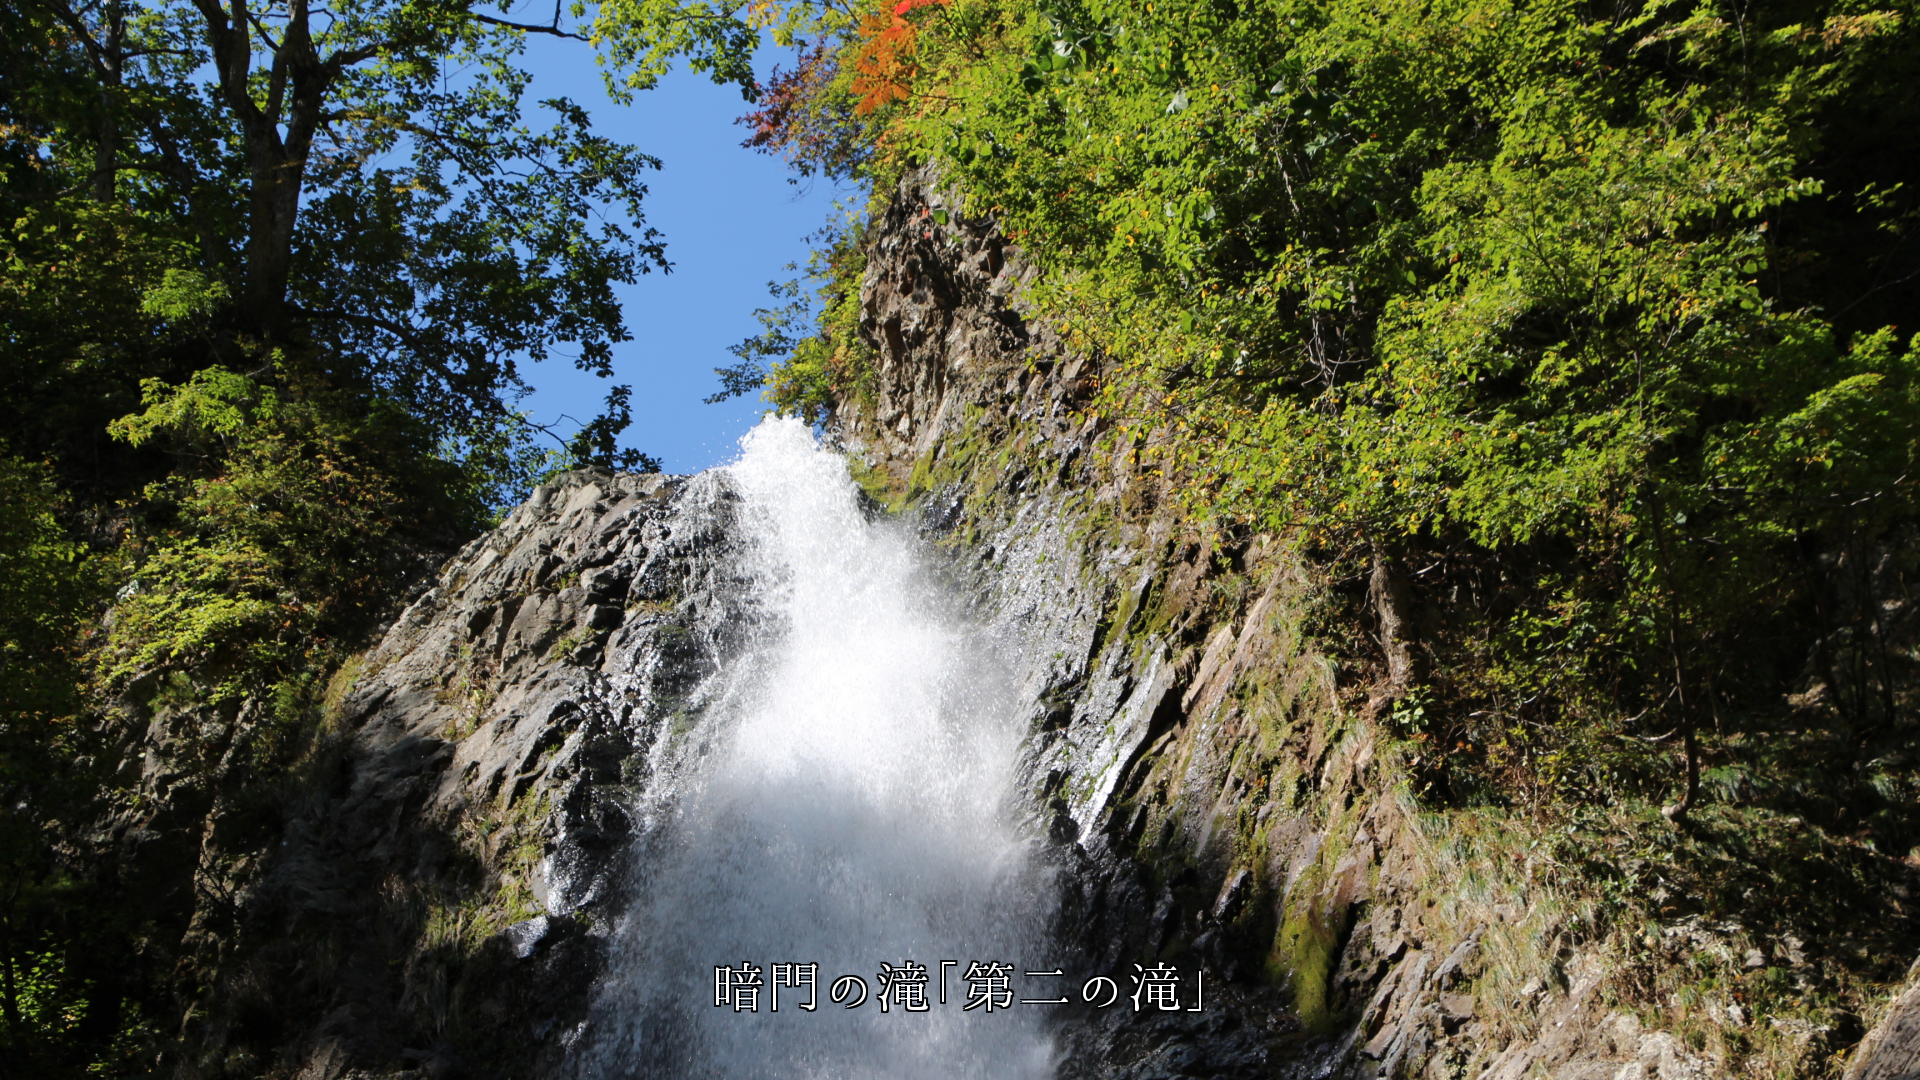 白神山地の3つの暗門滝、渓流や岩、協力し合って　自然の美しさが増す